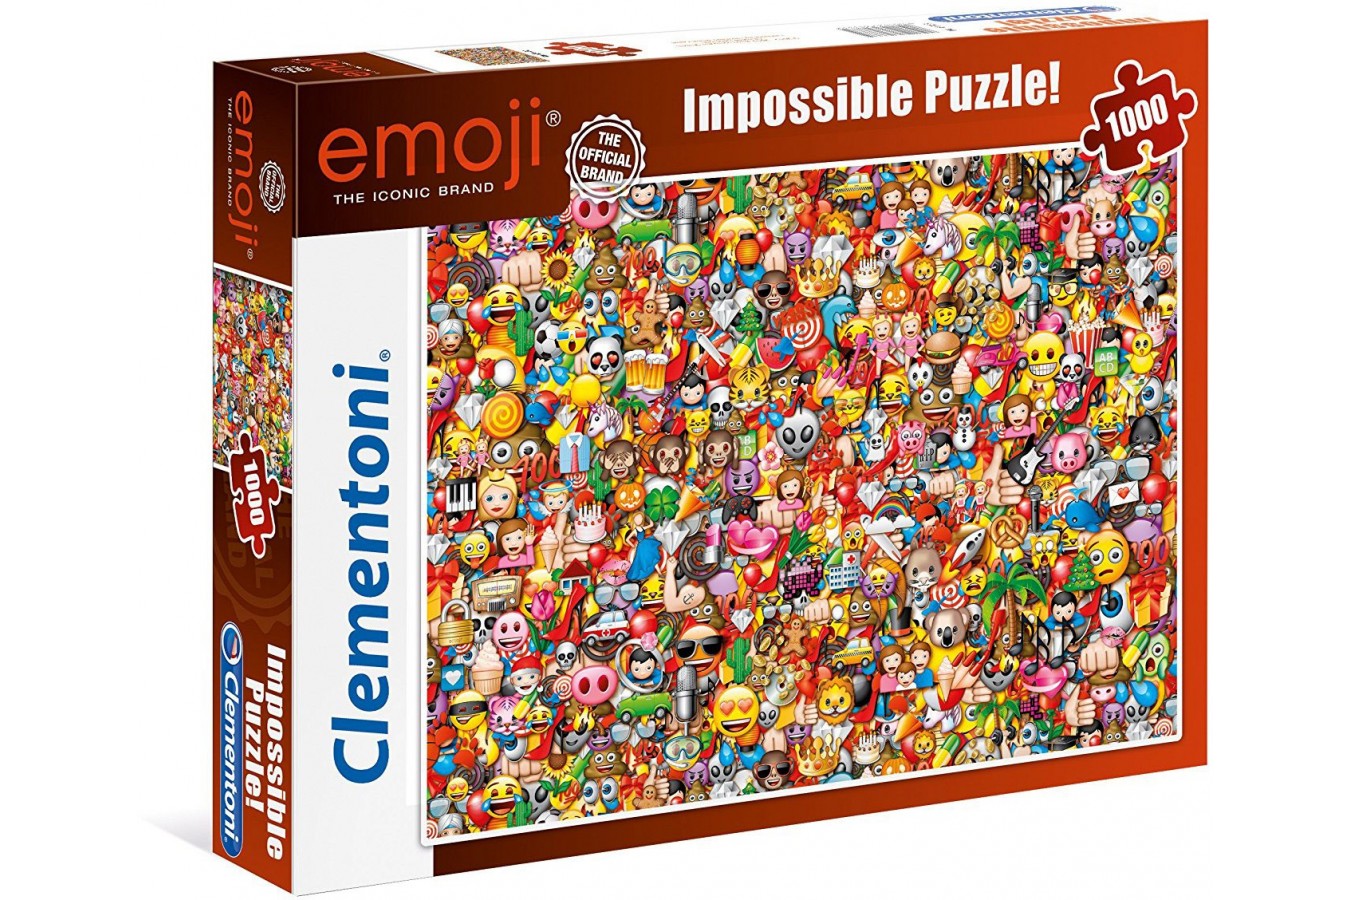 Puzzle Clementoni - Emoji - Impossible Puzzle!, 1000 piese dificile (60910)